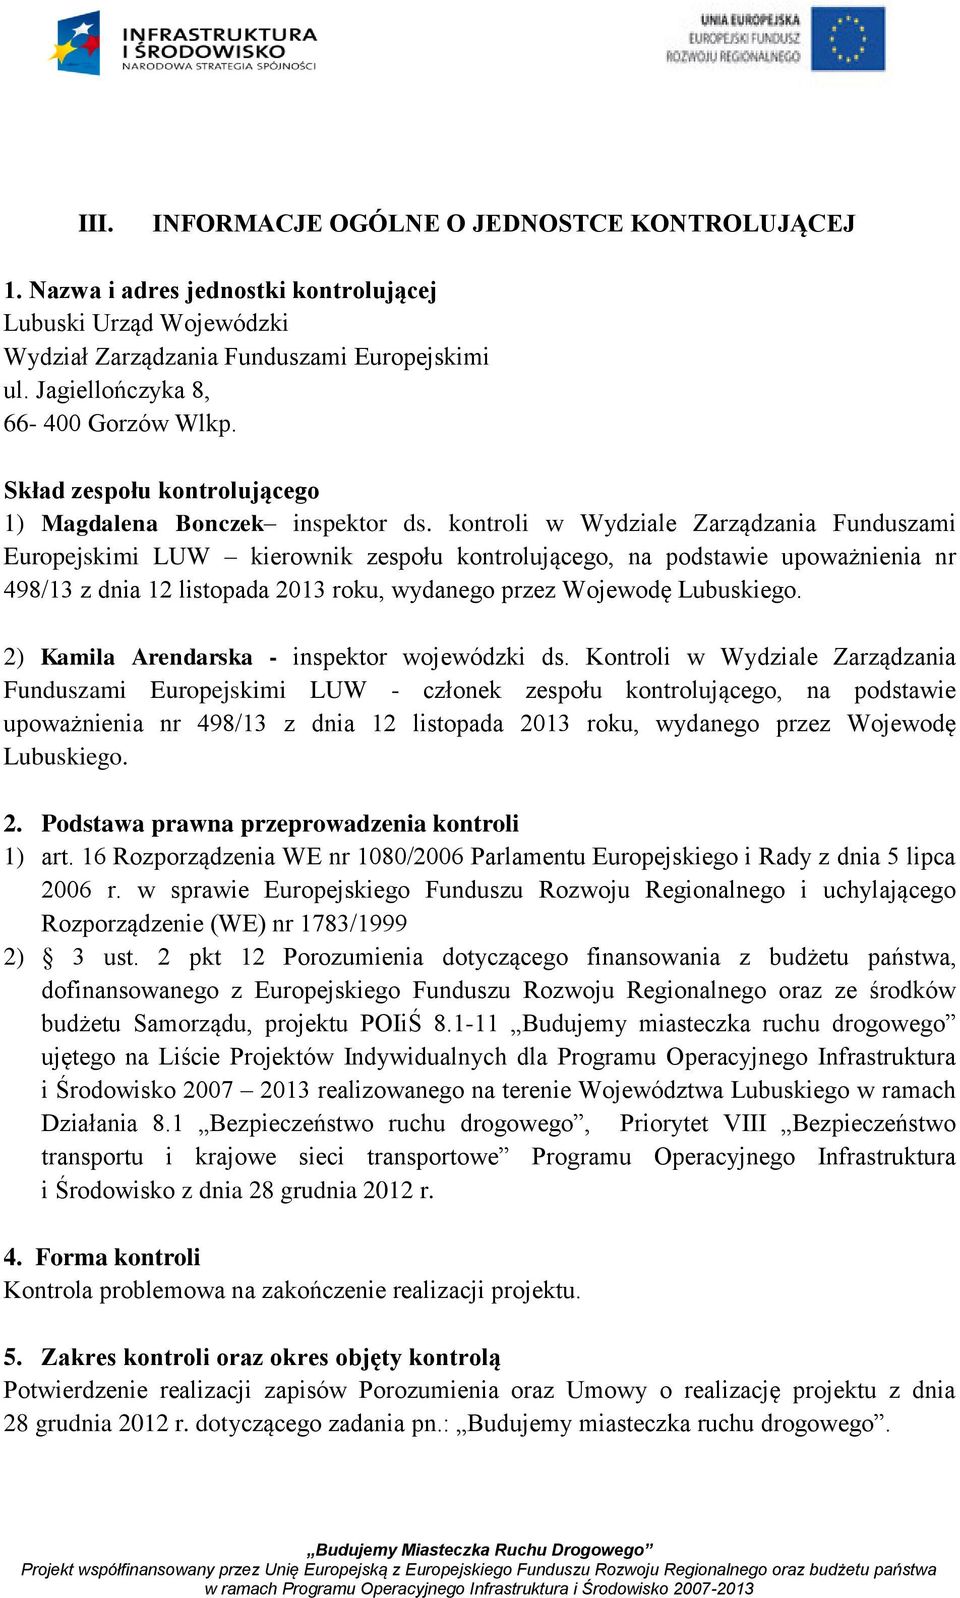 kontroli w Wydziale Zarządzania Funduszami Europejskimi LUW kierownik zespołu kontrolującego, na podstawie upoważnienia nr 498/13 z dnia 12 listopada 2013 roku, wydanego przez Wojewodę Lubuskiego.